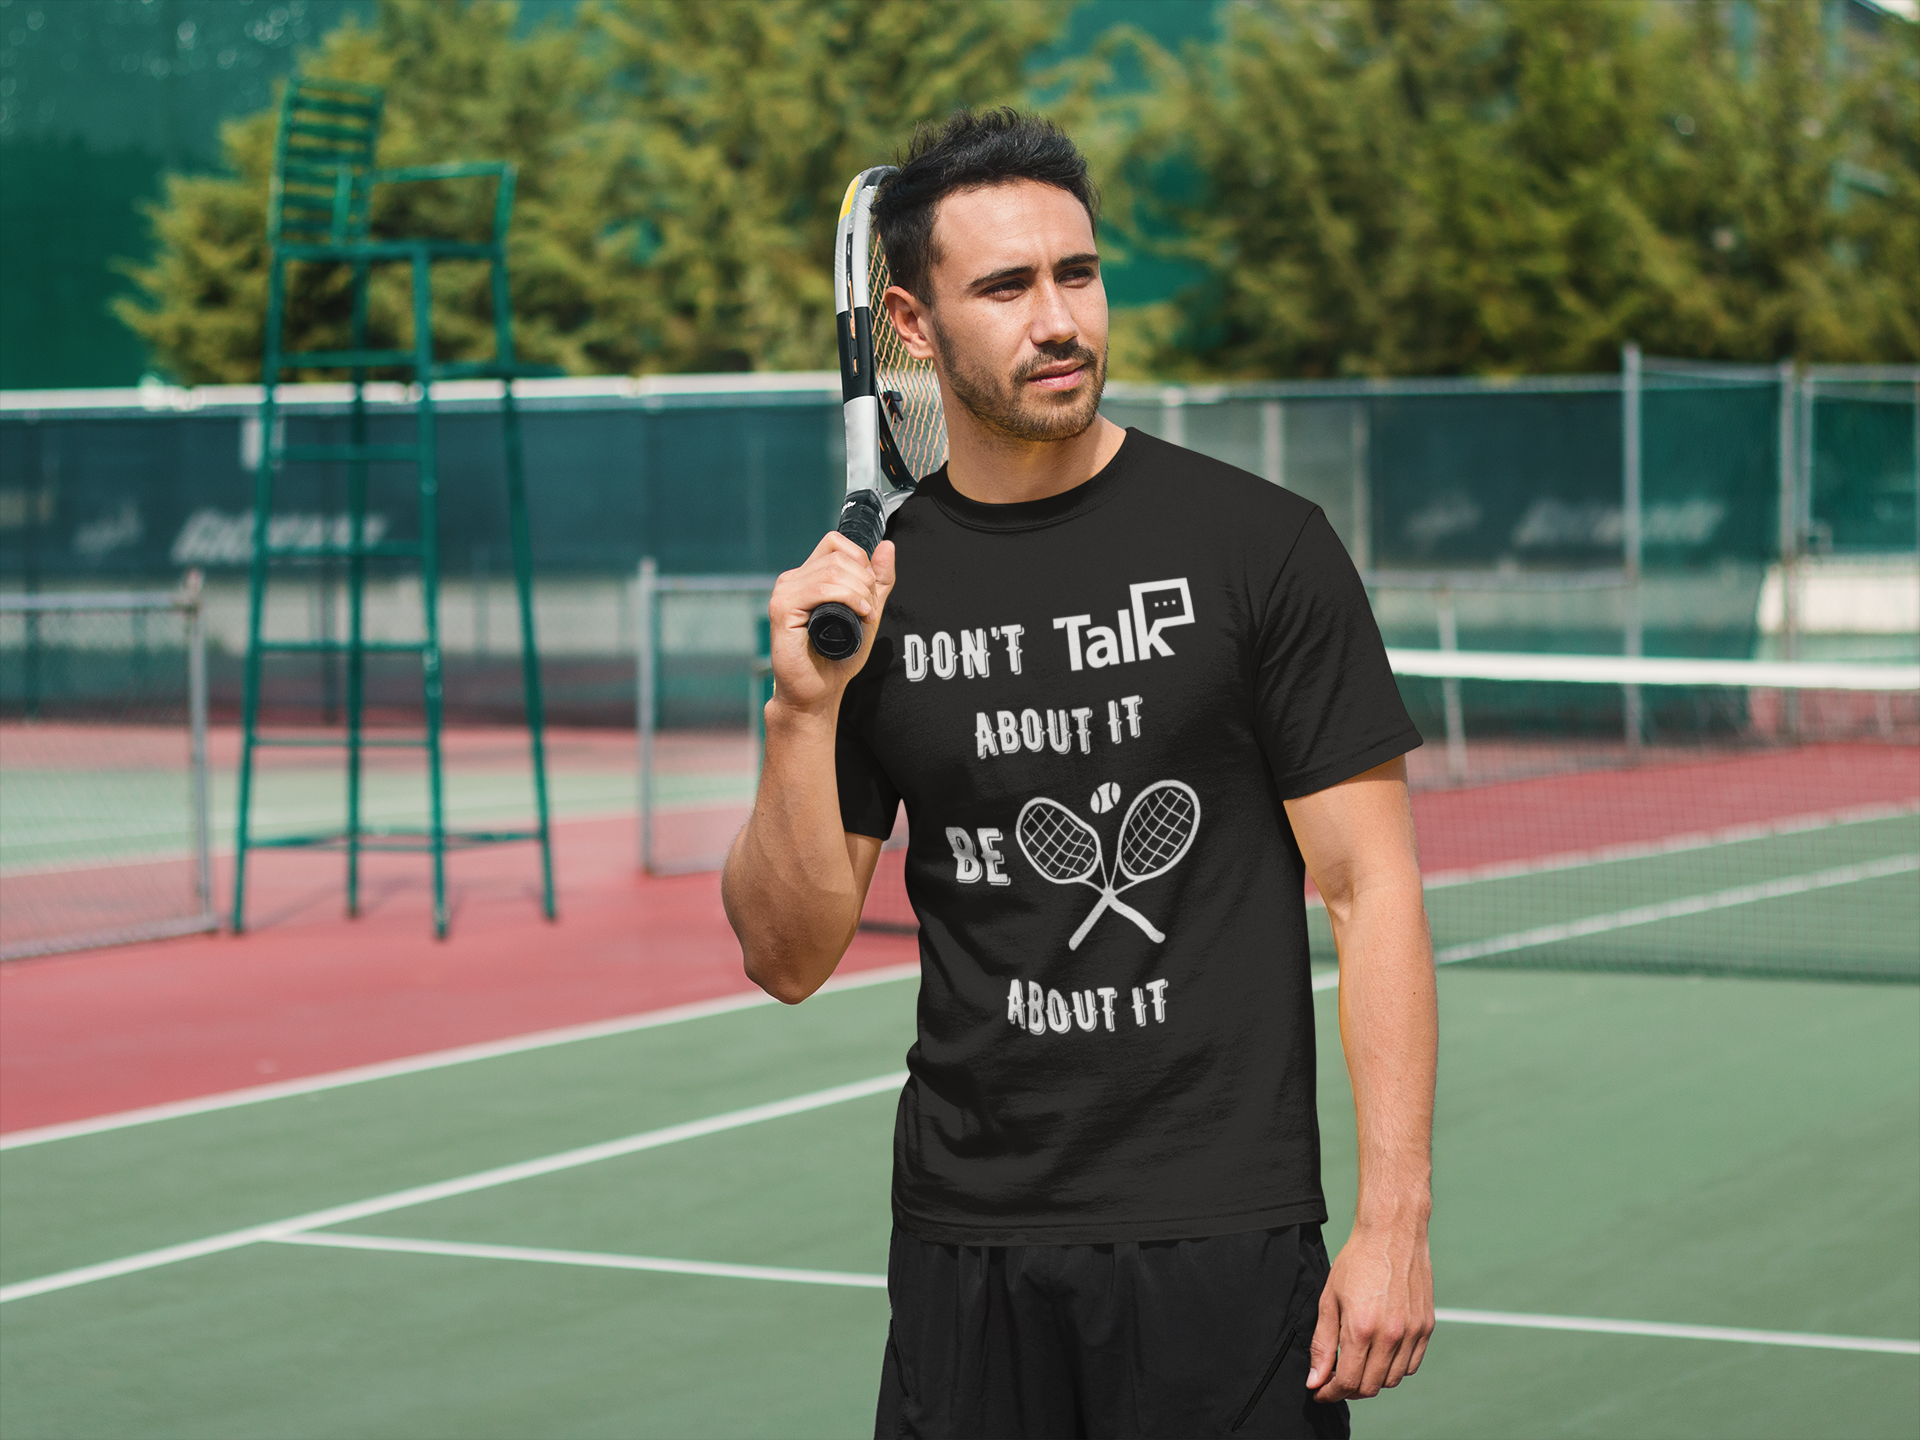 Don't Talk About It - Tennis Short Sleeve Shirt